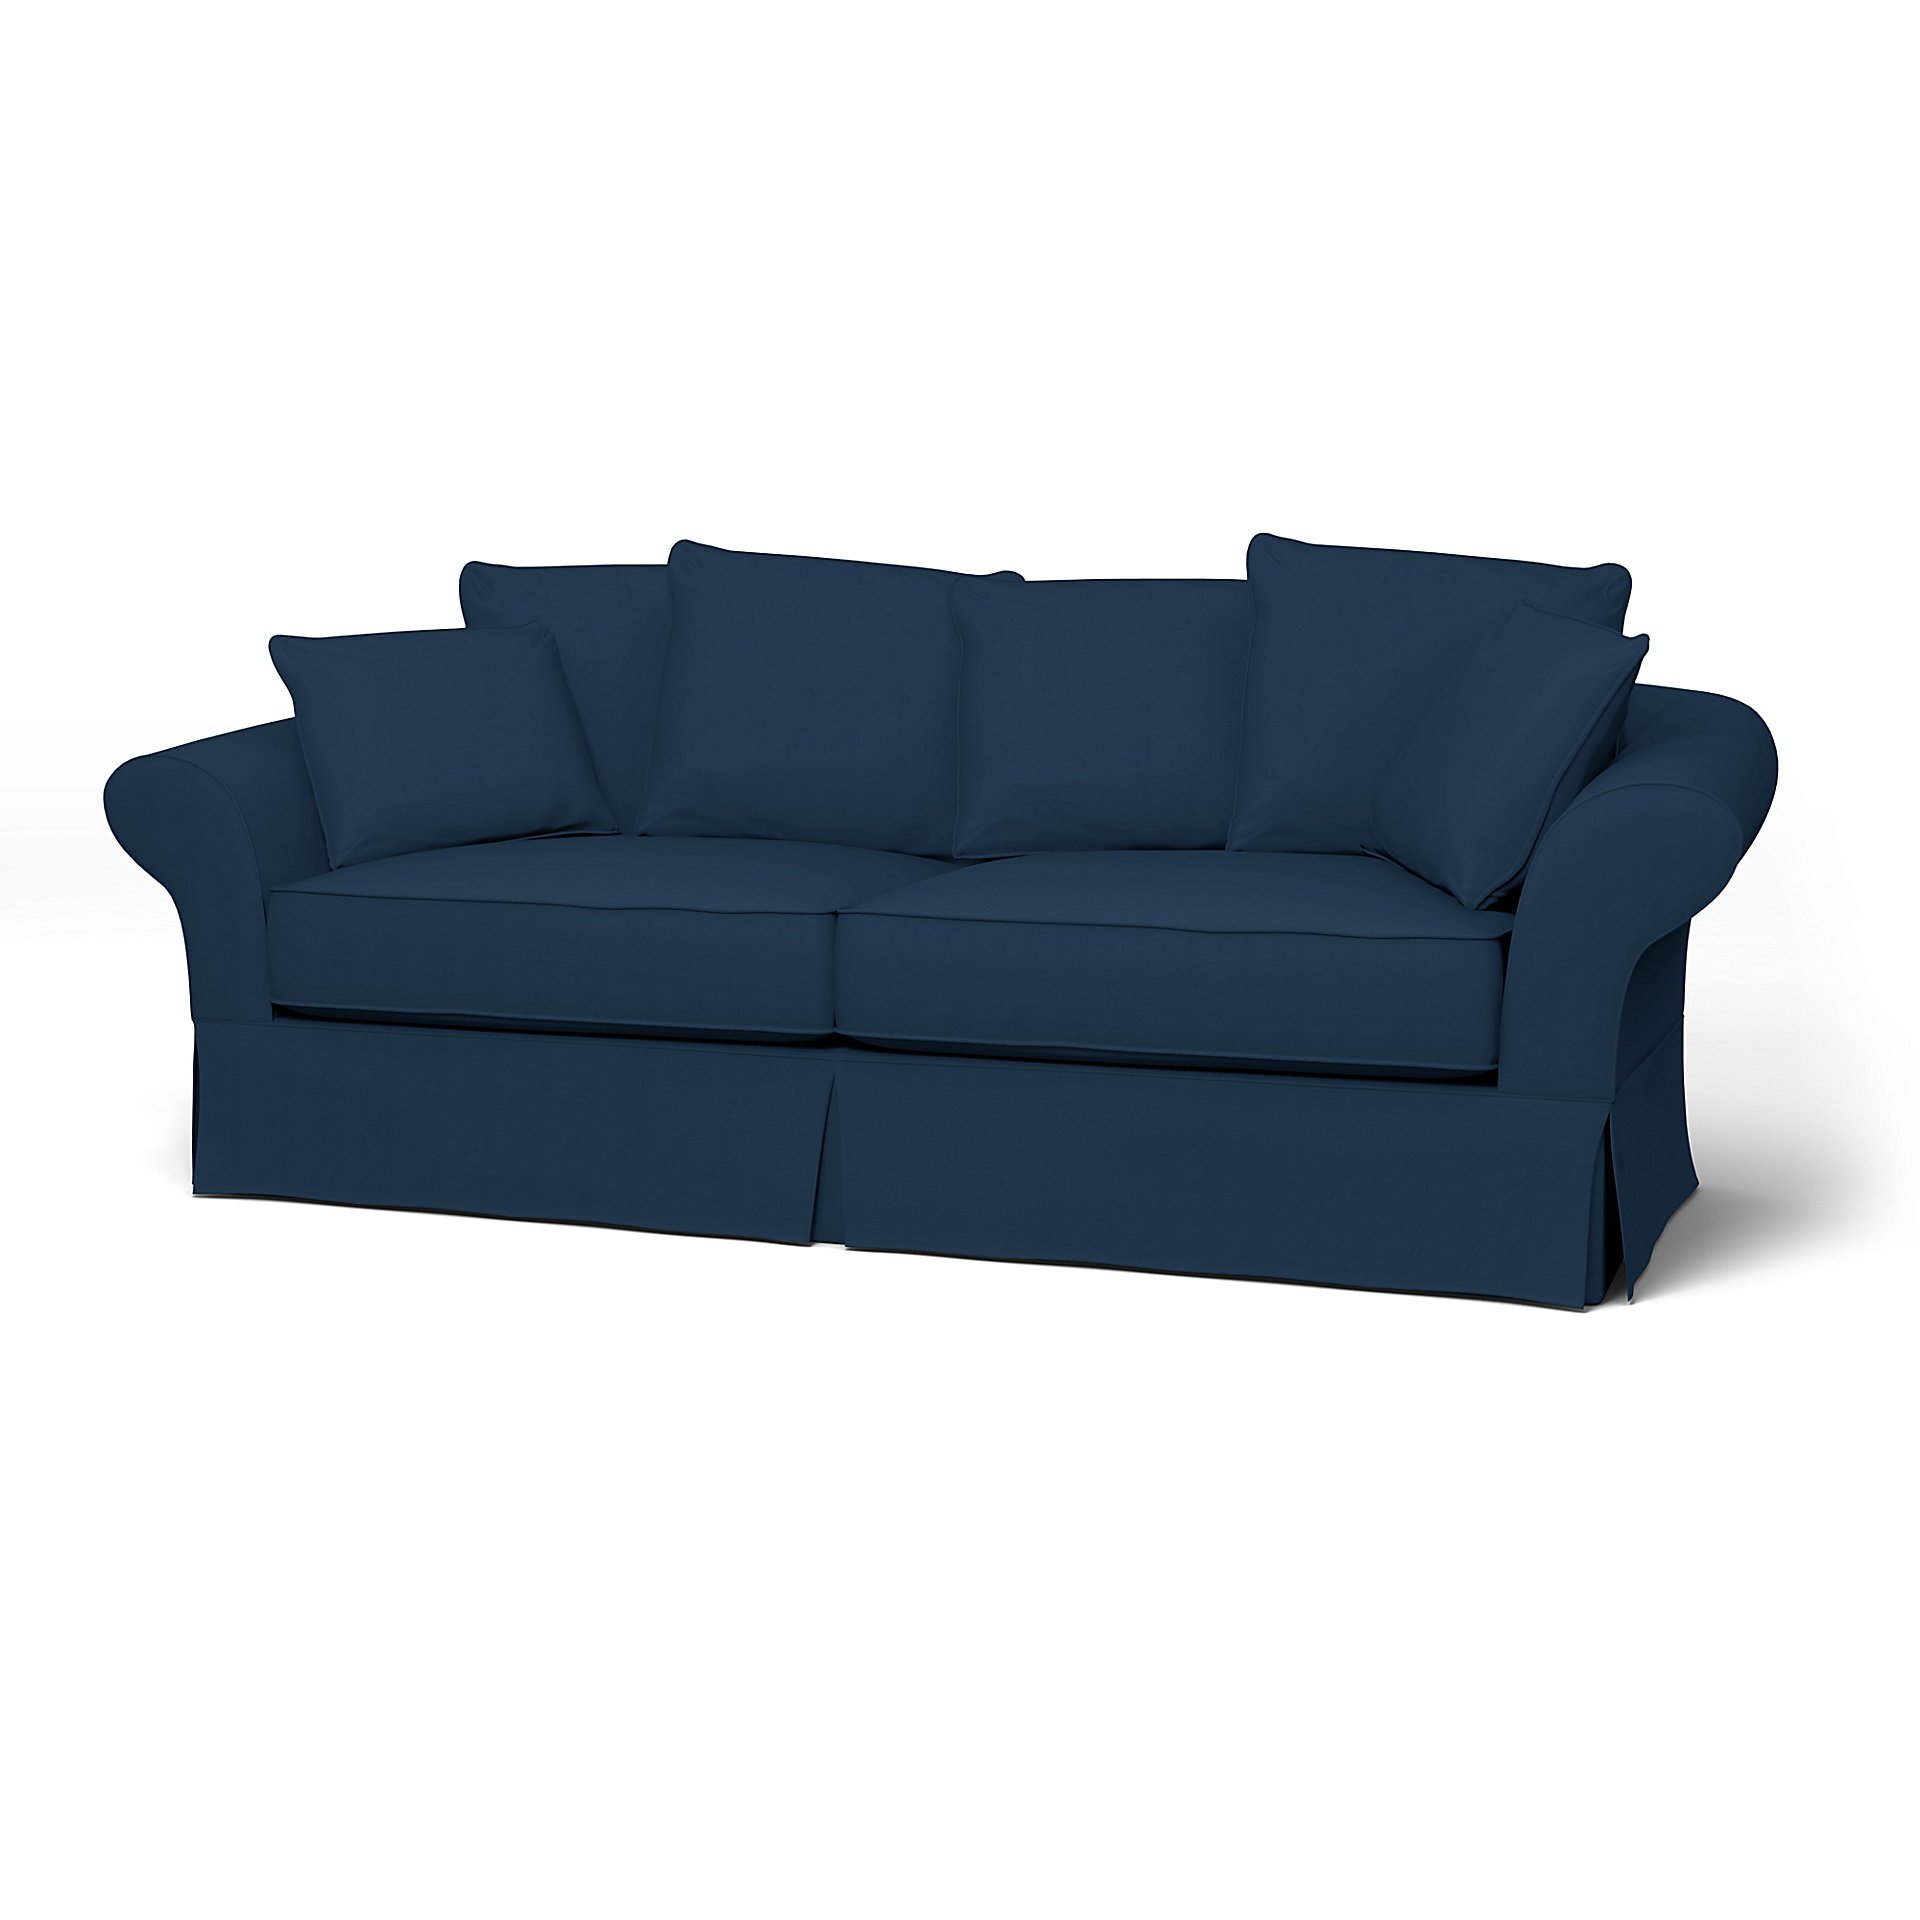 IKEA - Backamo 3 Seater Sofa Cover, Deep Navy Blue, Cotton - Bemz